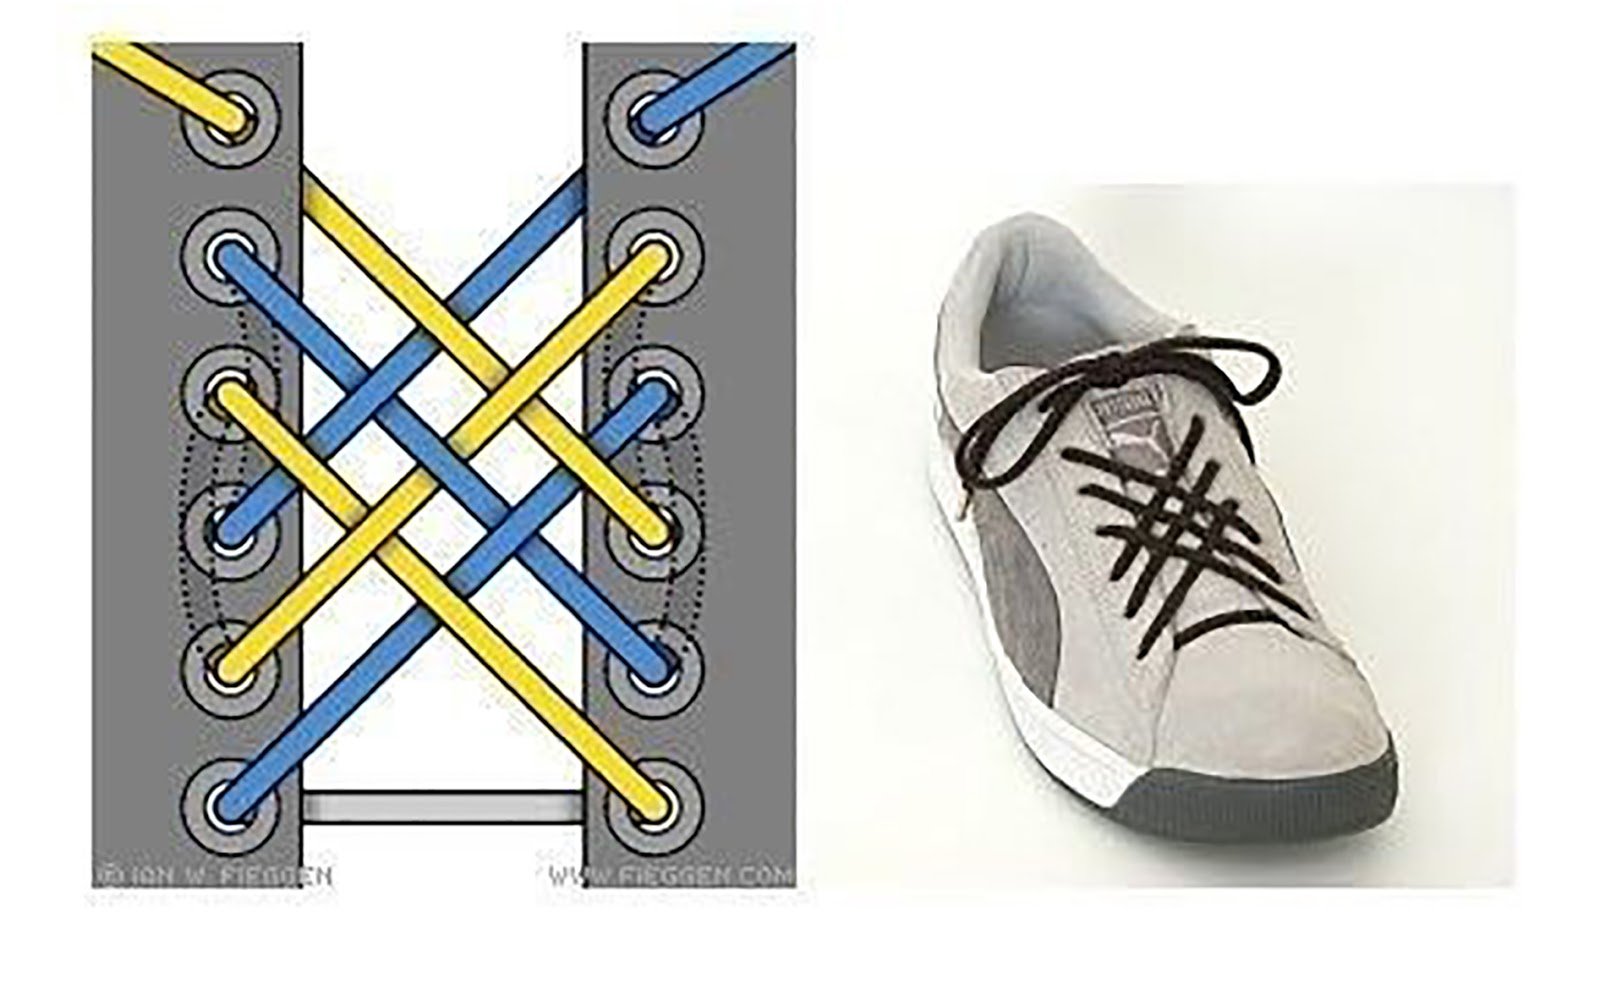 Схема шнуровки крест накрест изнутри. Типы шнурования шнурков на 5. Варианты шнуровки кед 6 дырок. Красивое завязывание шнурков. Оригинальная шнуровка кроссовок.